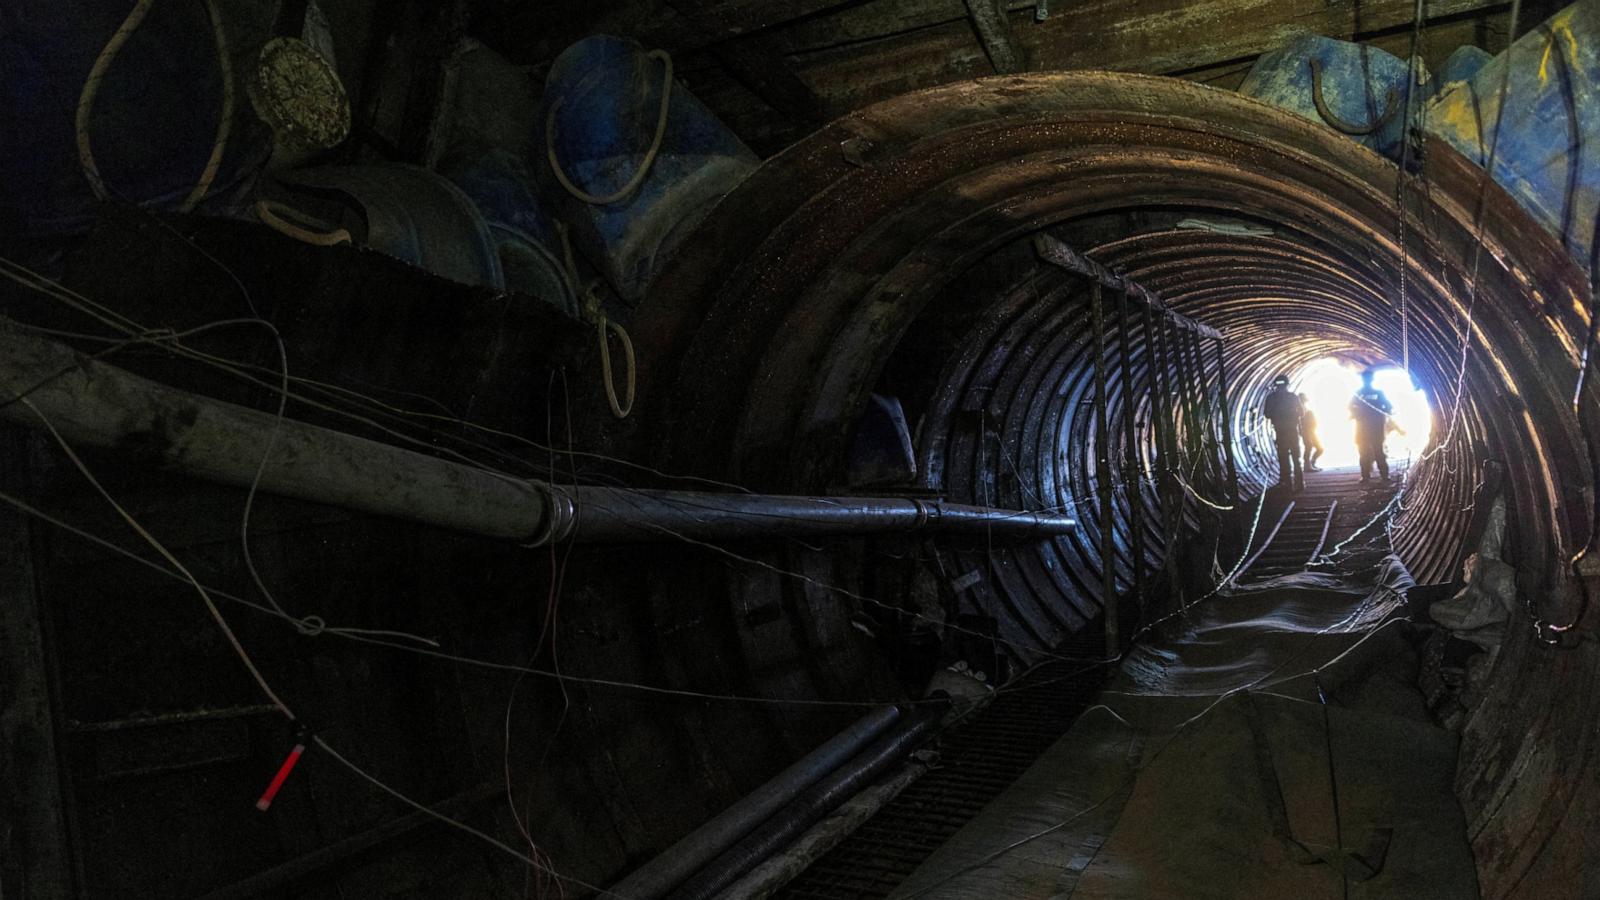 IDF Discovers One of Hamas' Largest Tunnels beneath Gaza, Latest Israel-Gaza Updates